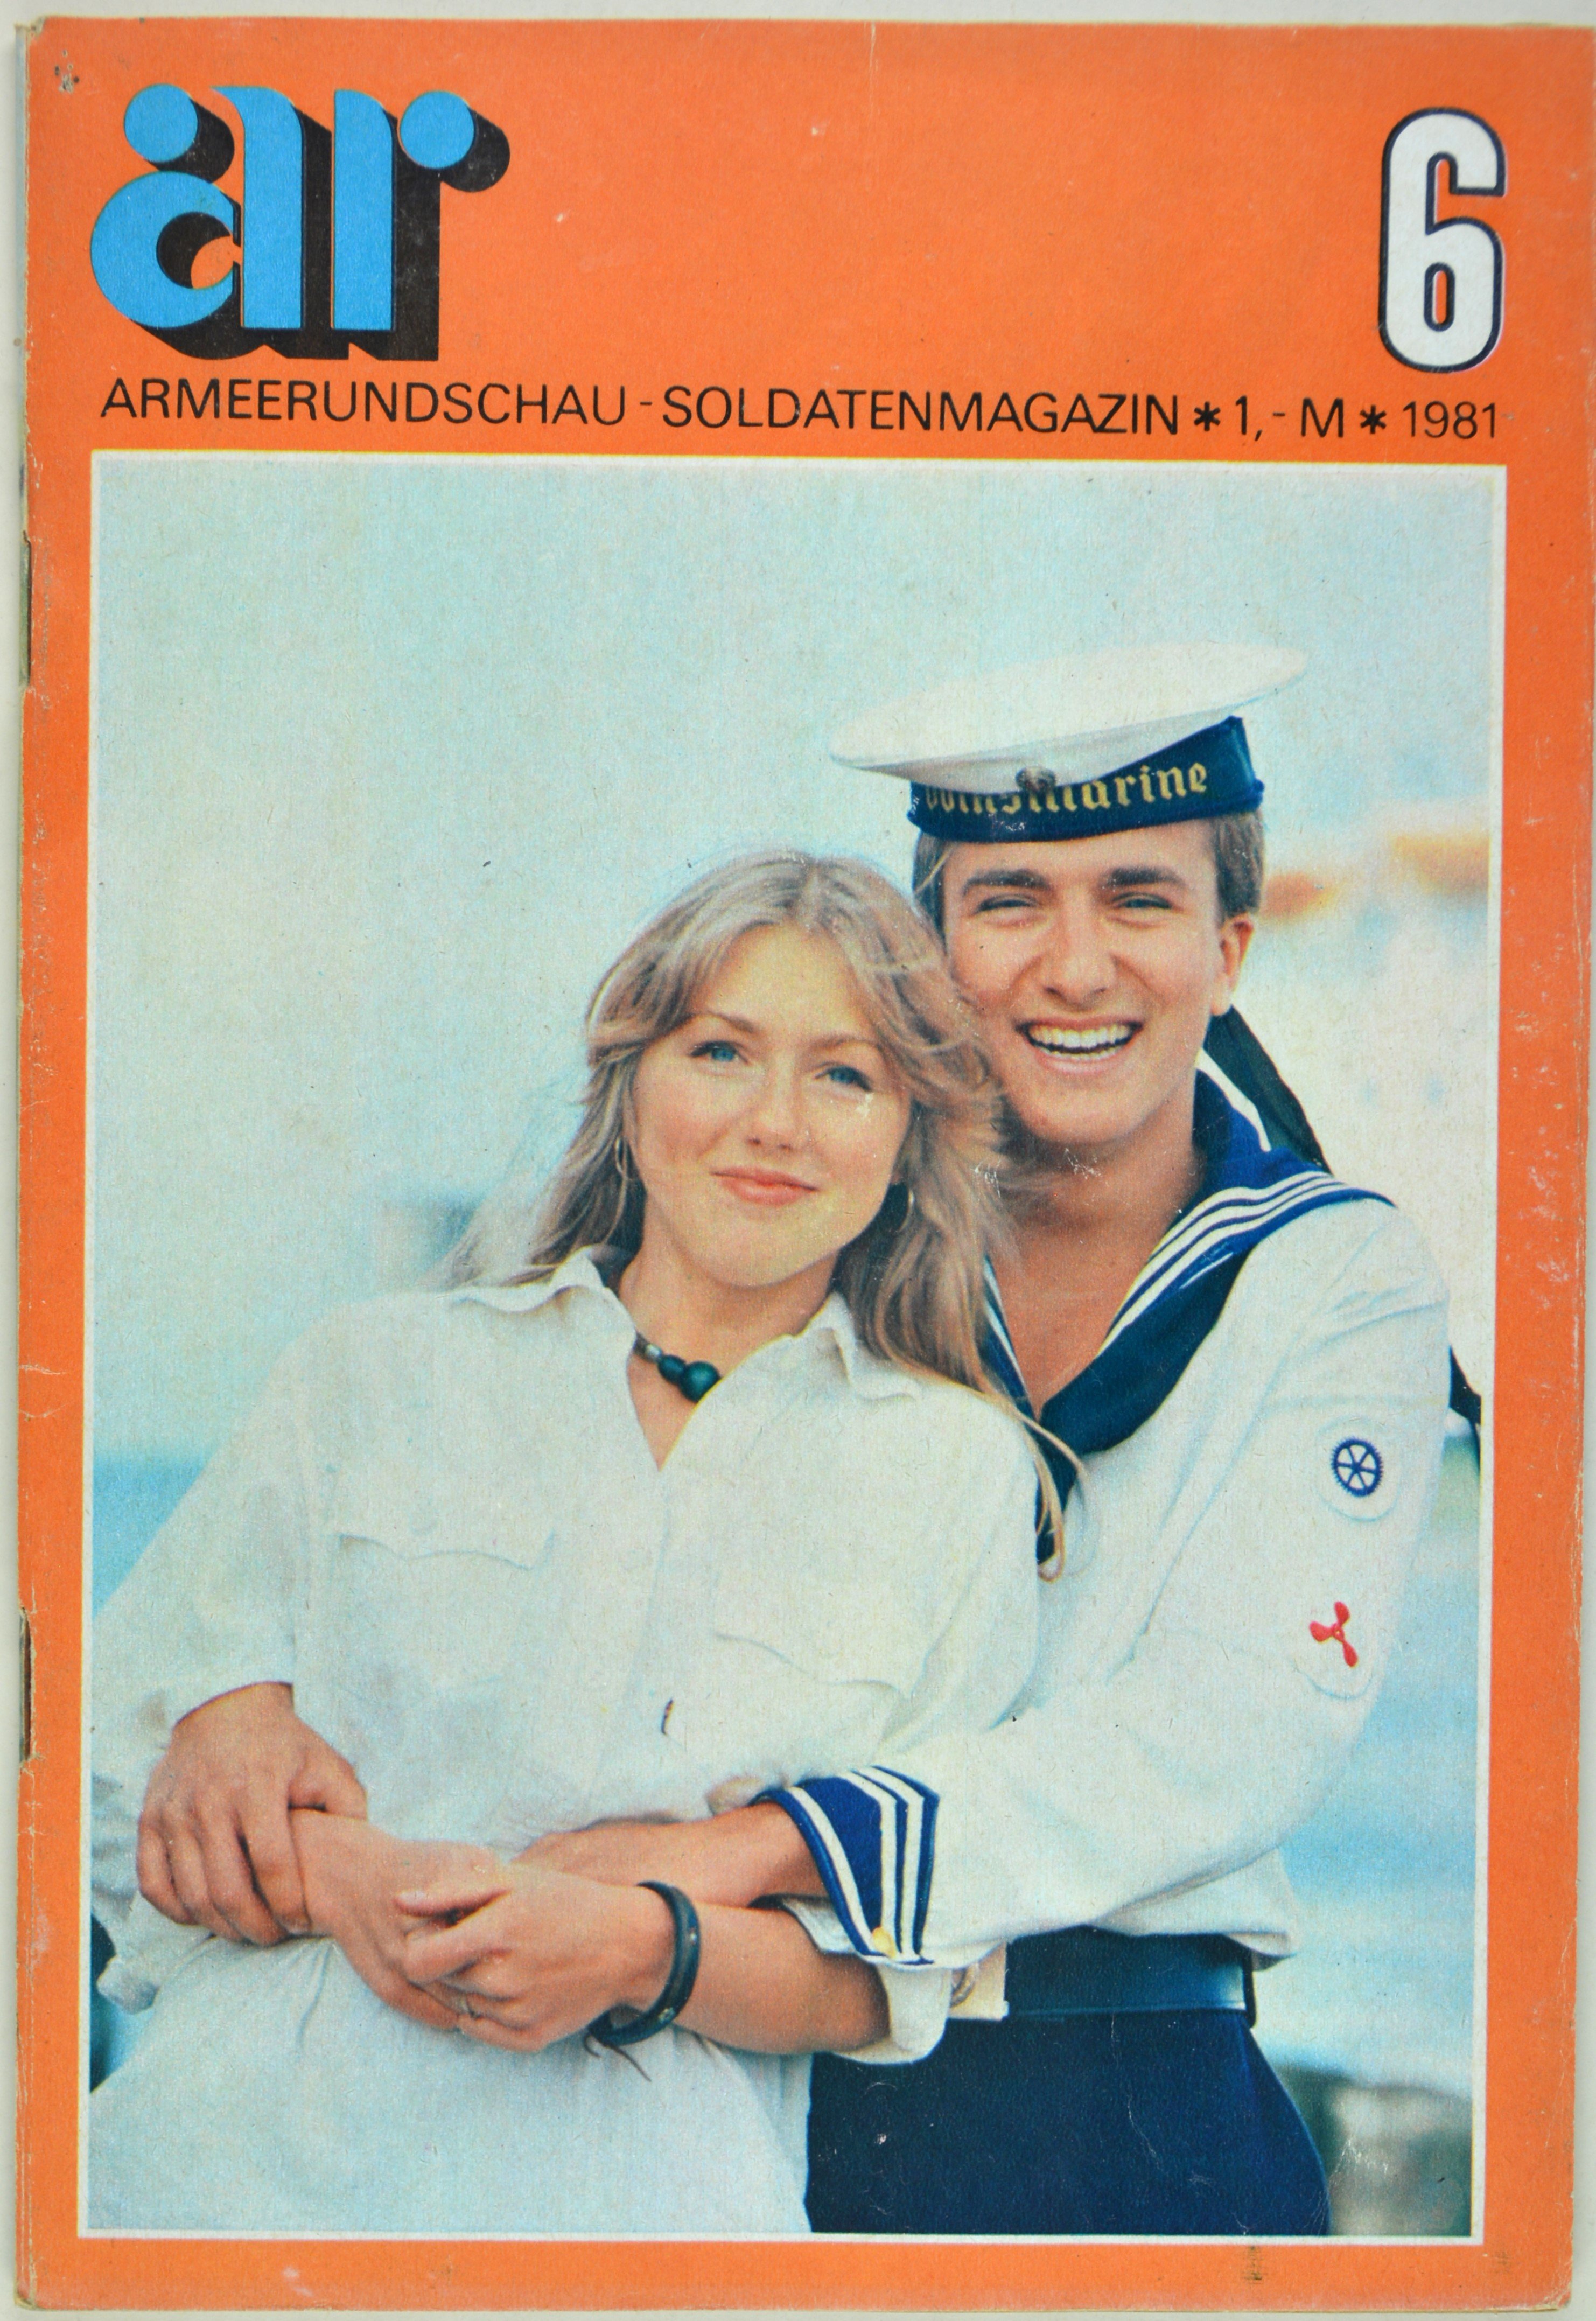 Armeerundschau - Soldatenmagazin (1981), Heft 6 (DDR Geschichtsmuseum im Dokumentationszentrum Perleberg CC BY-SA)